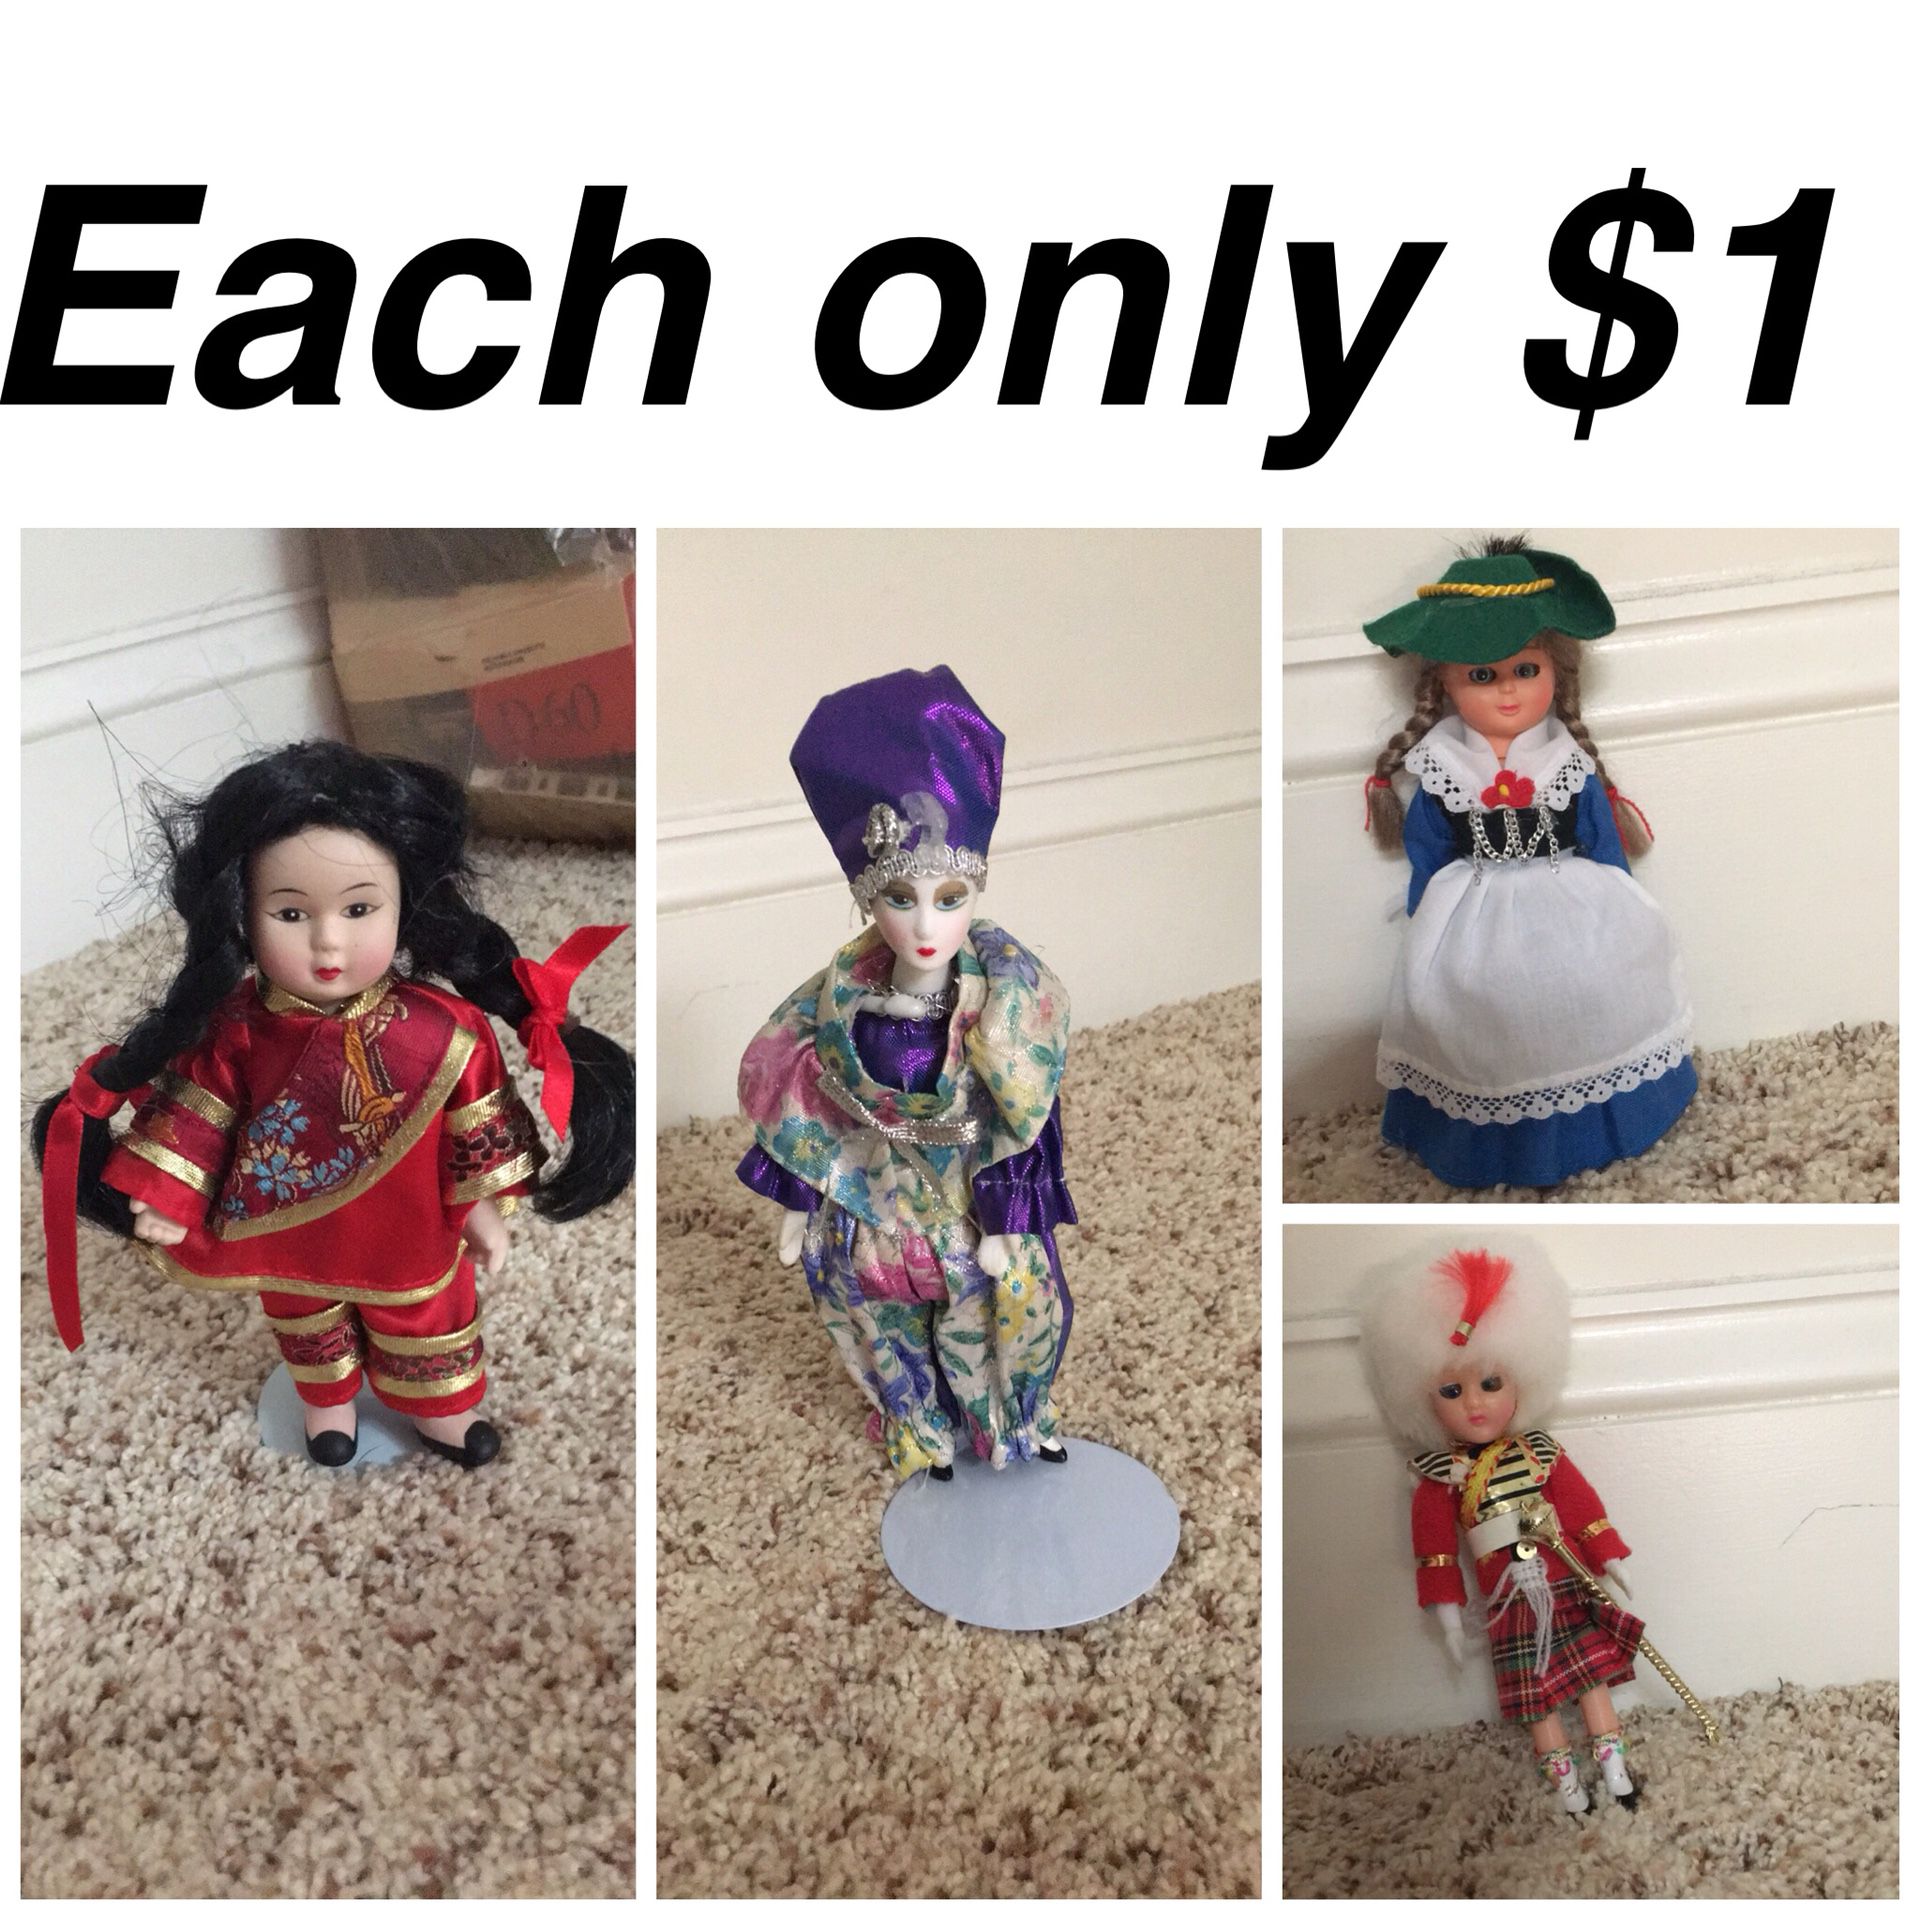 Dolls each $1